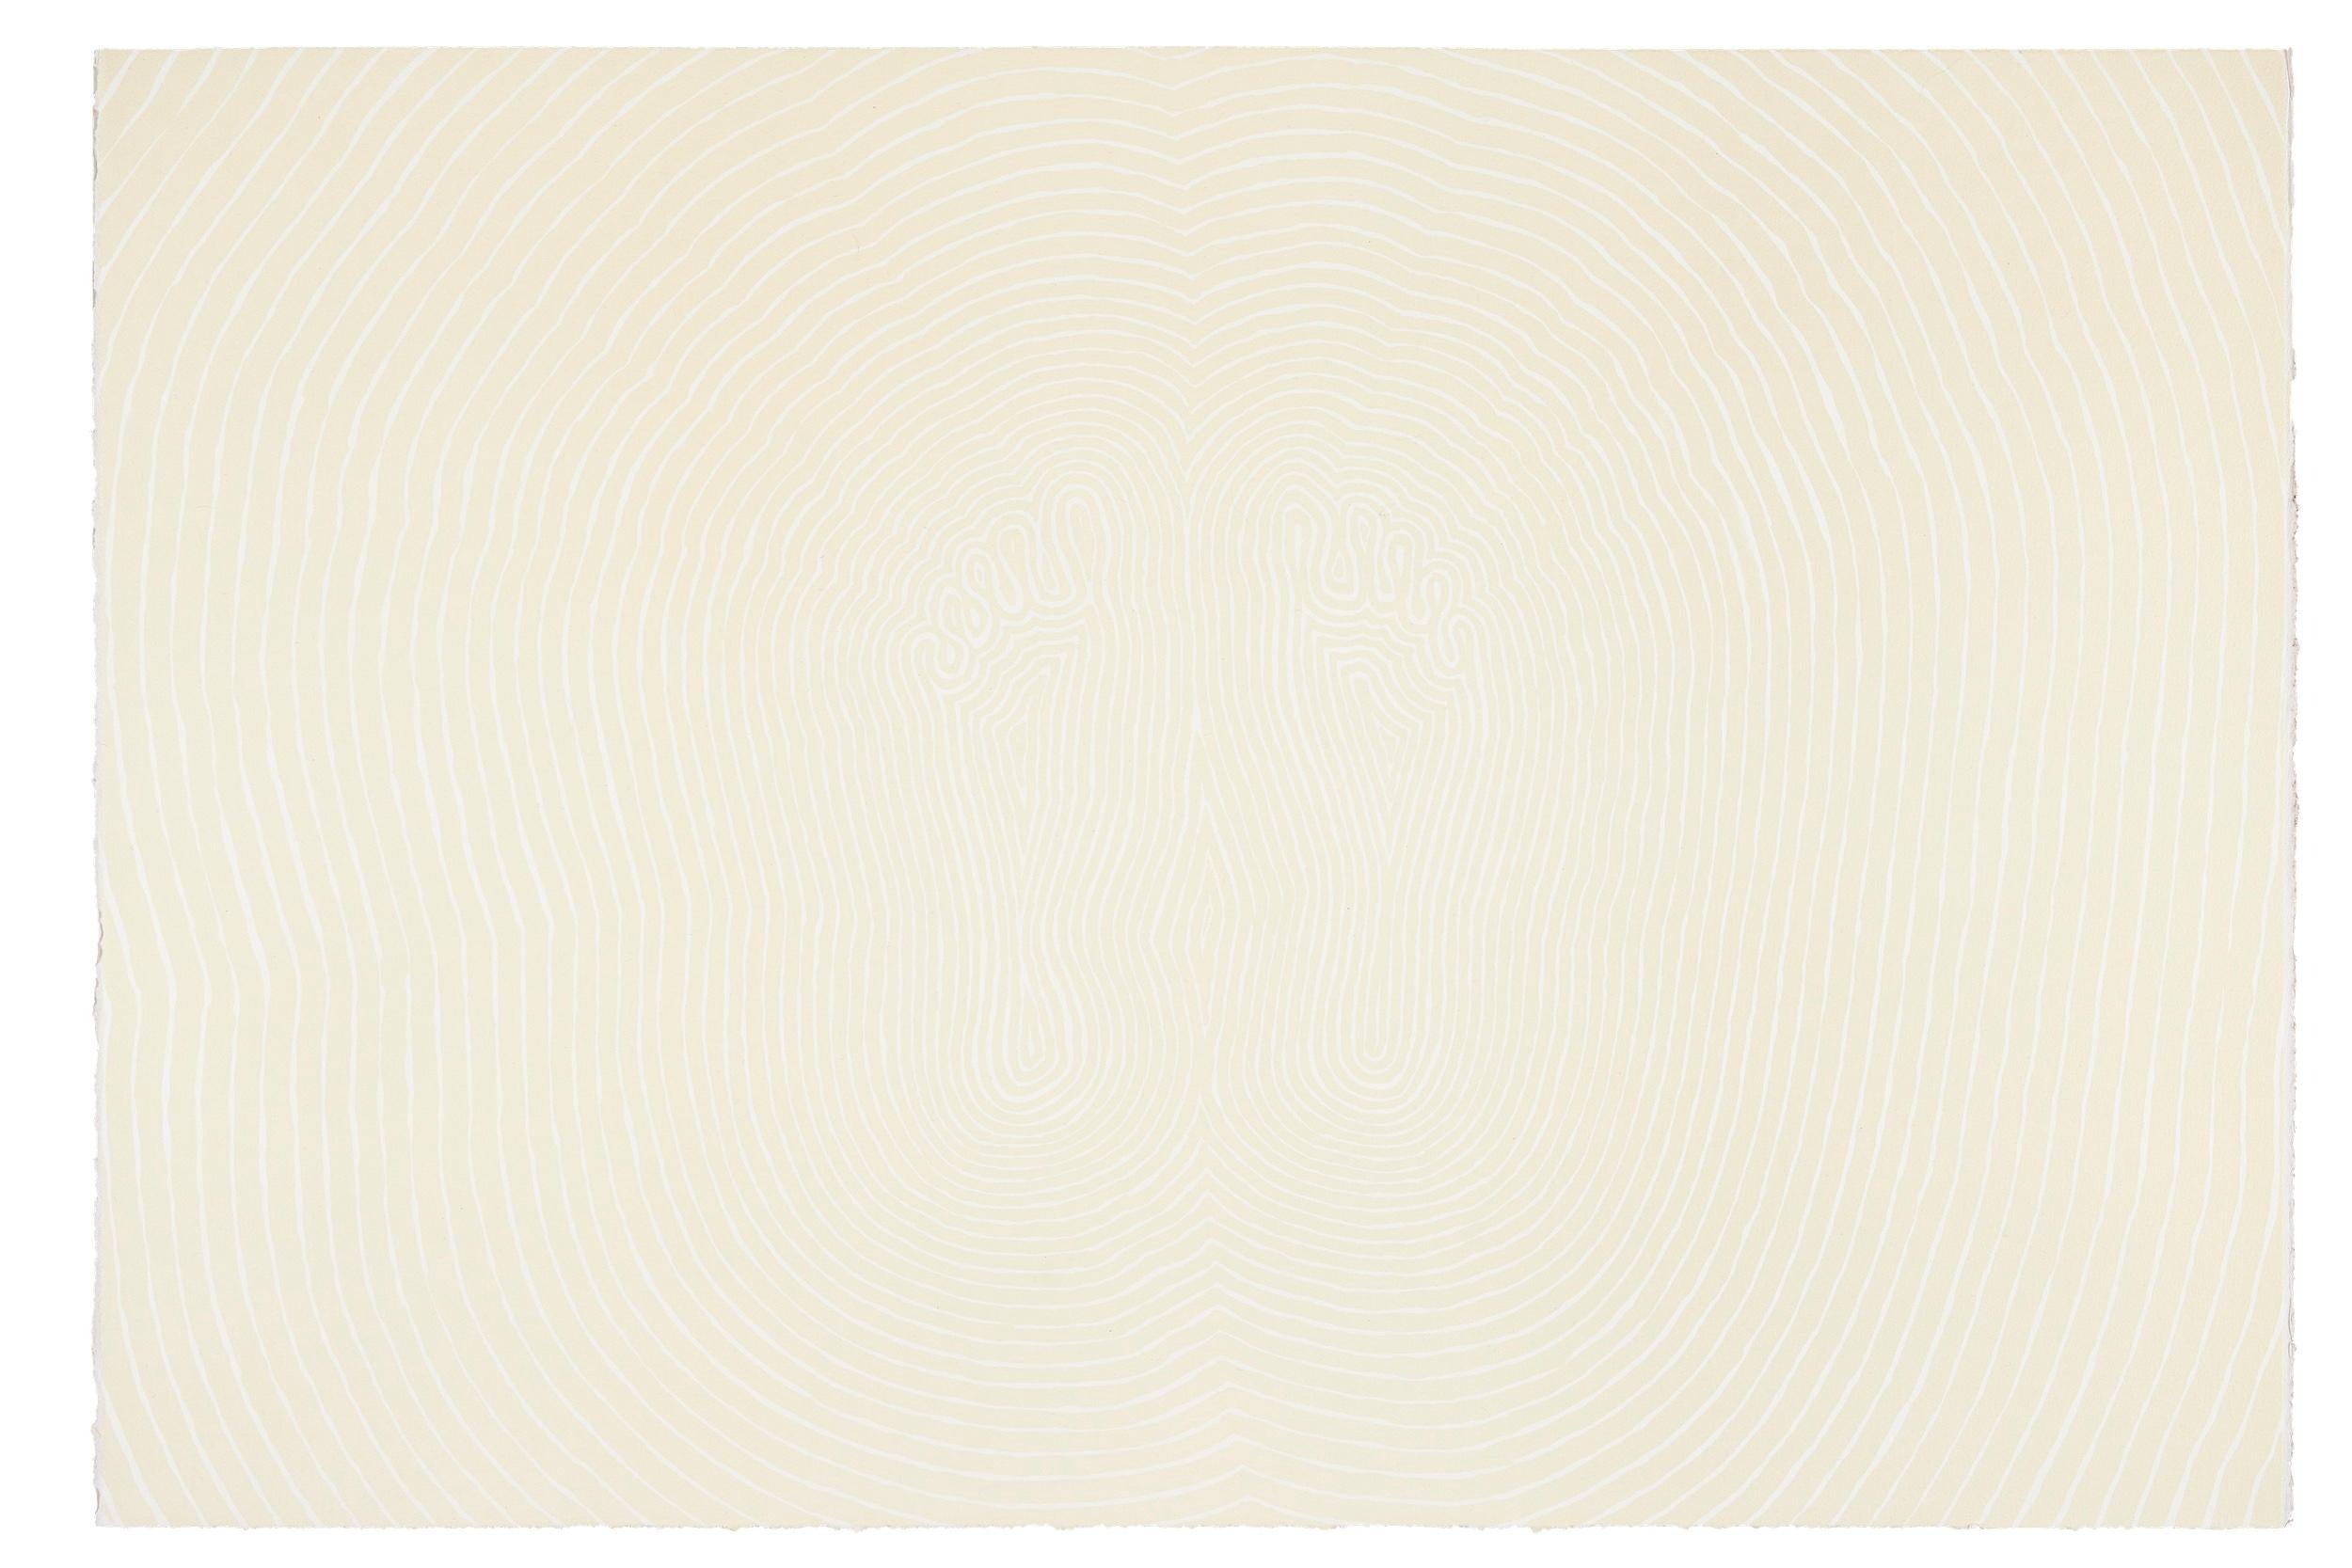 Plancher, 2007
Antoni Gormley 

Lithographie, sur papier 300g. Papier Velin d'Arches
Signé et numéroté de l'édition de 40 exemplaires.
Publié par Edition Copenhagen, Copenhague
Feuille : 69 × 100 cm (27.2 × 39.4 in)